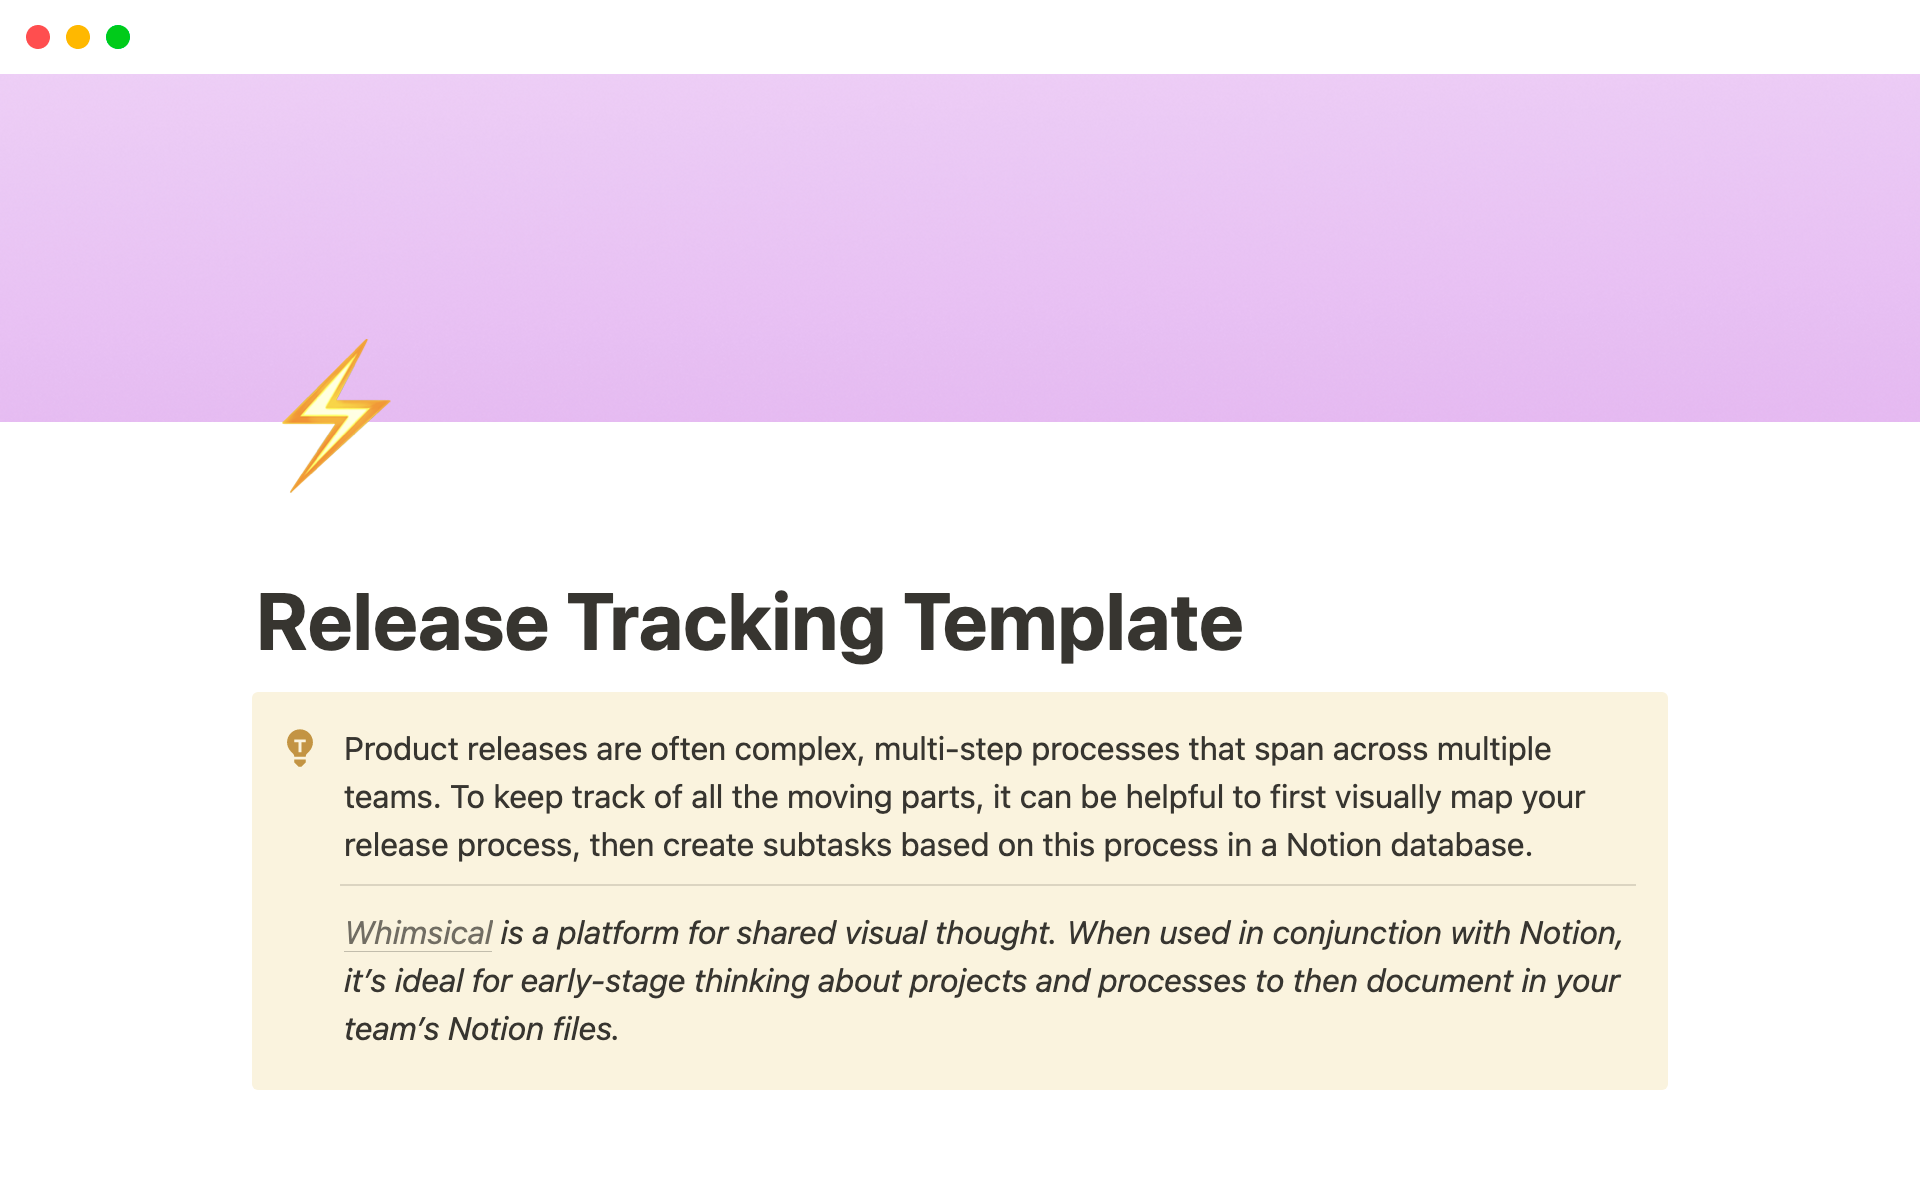 Uma prévia do modelo para Release Tracking Template